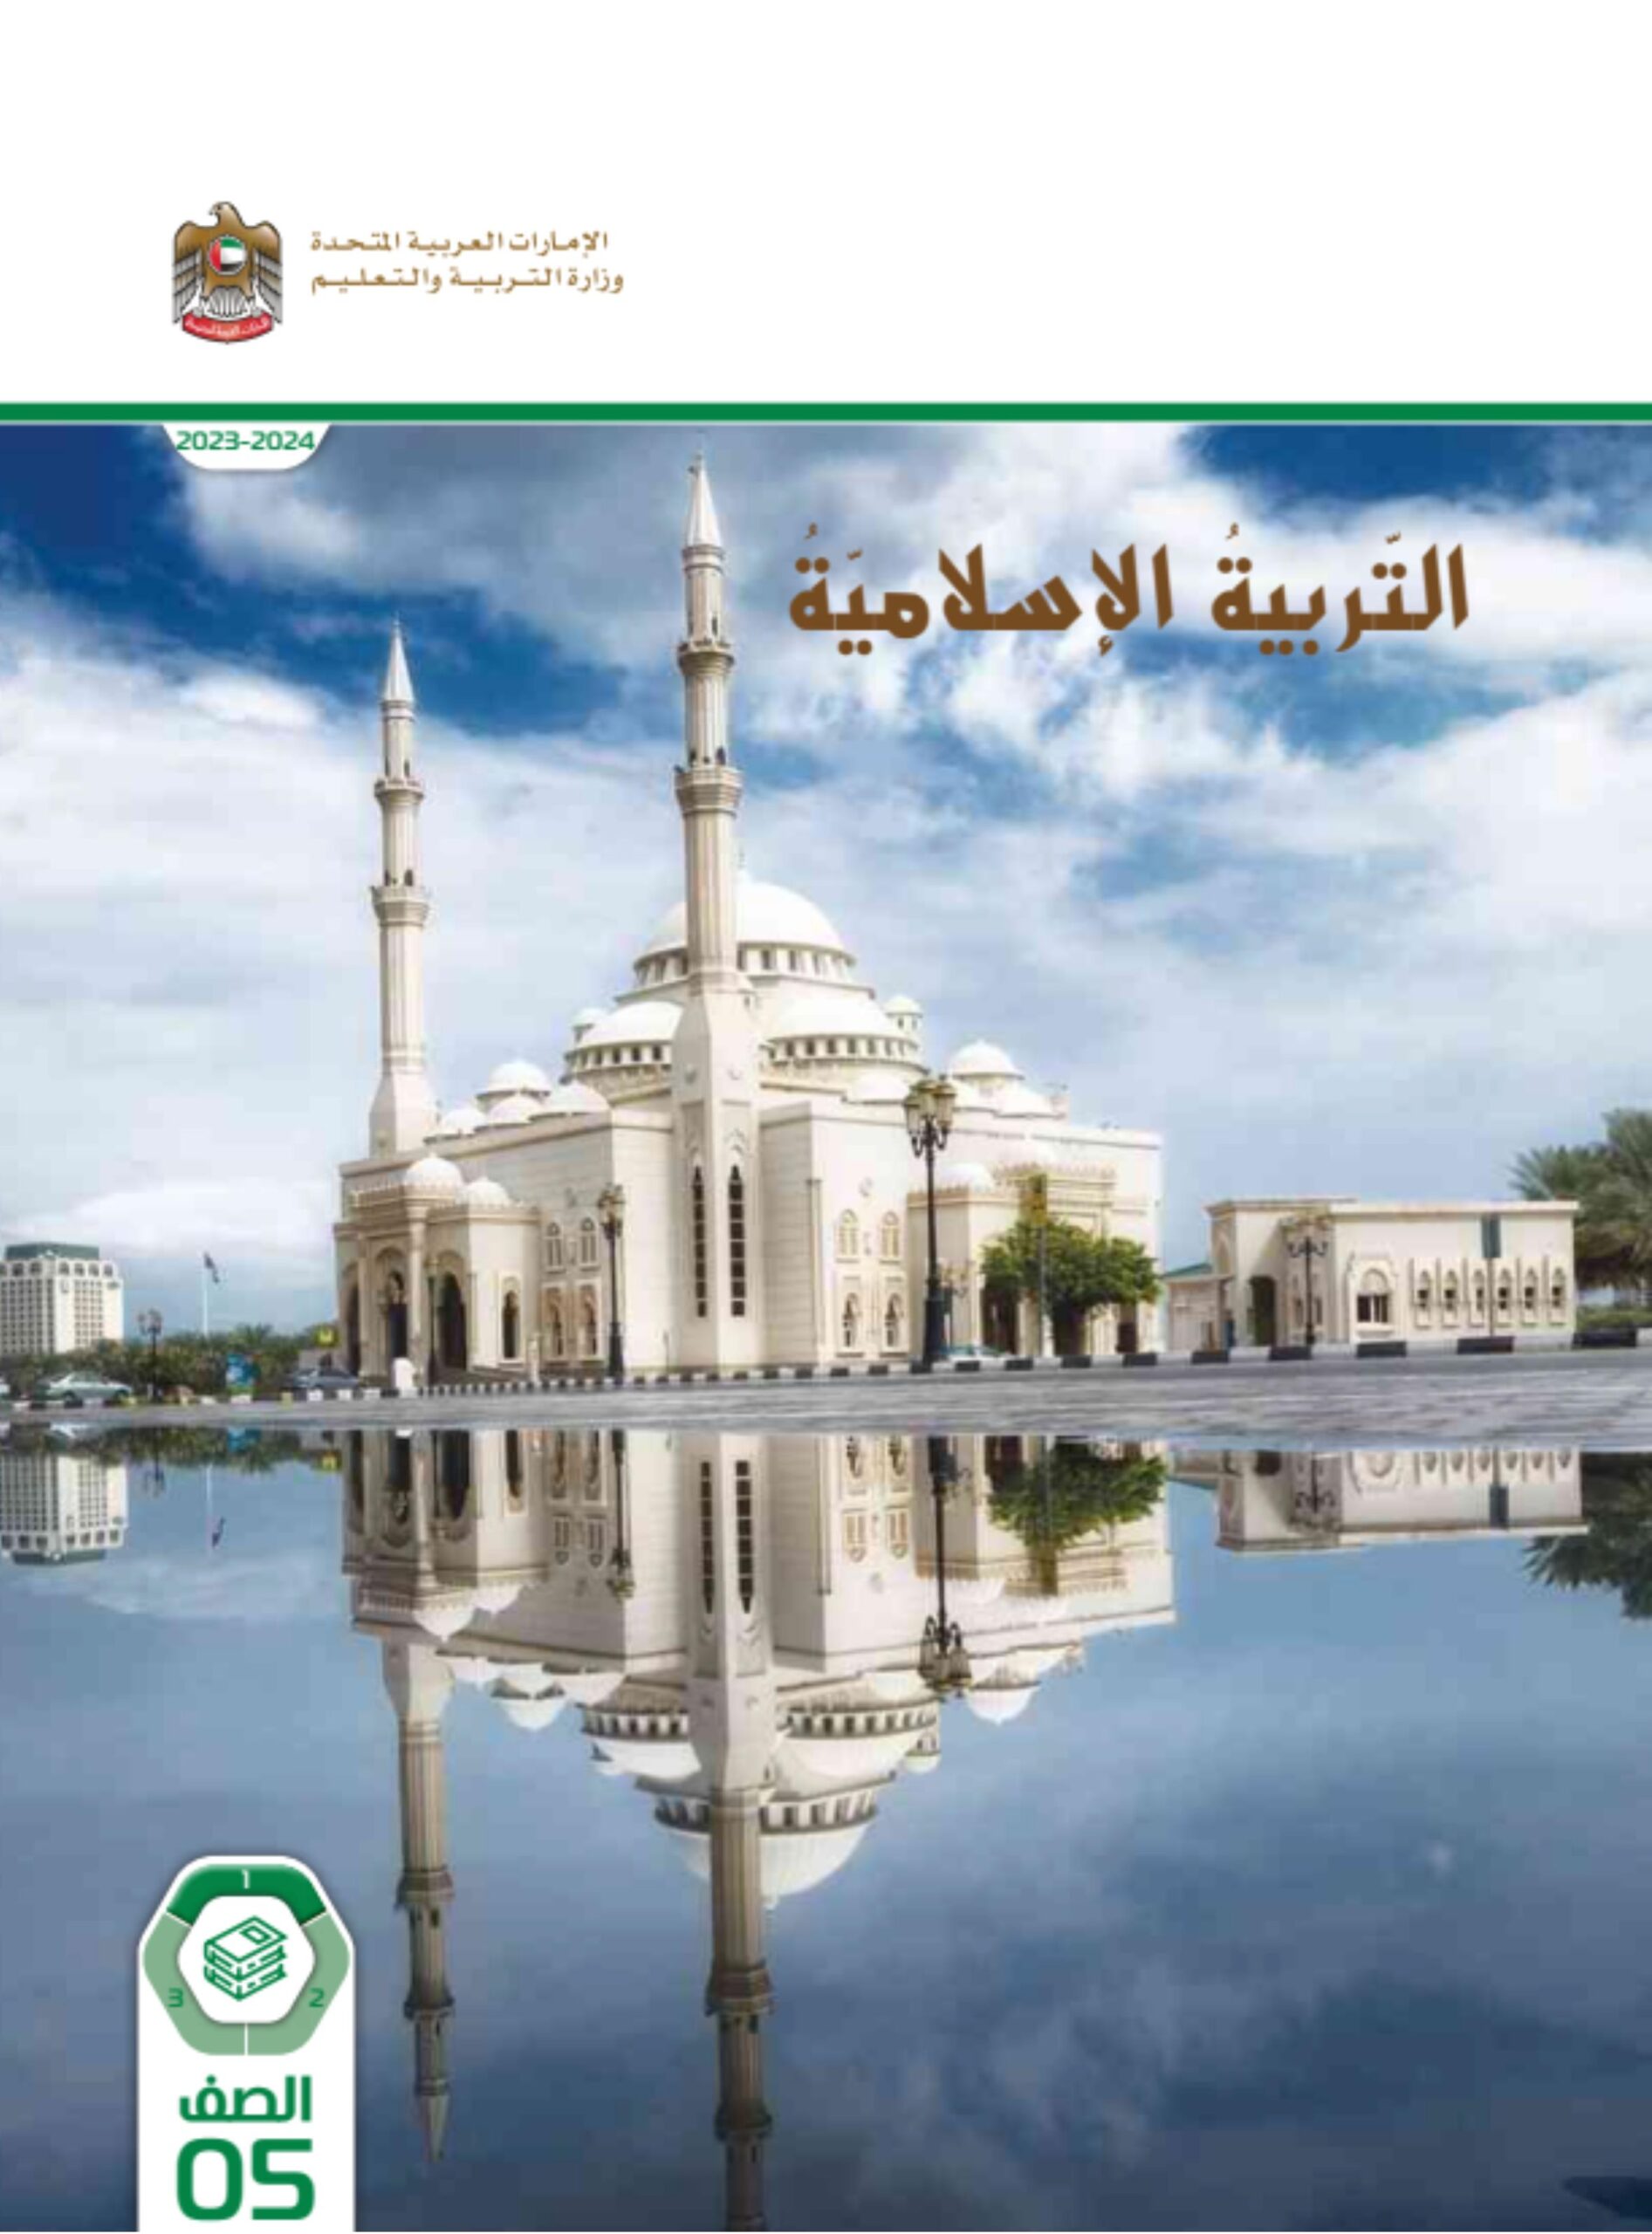 كتاب الطالب التربية الإسلامية الصف الخامس الفصل الدراسي الأول 2023-2024 نسخة مصورة 